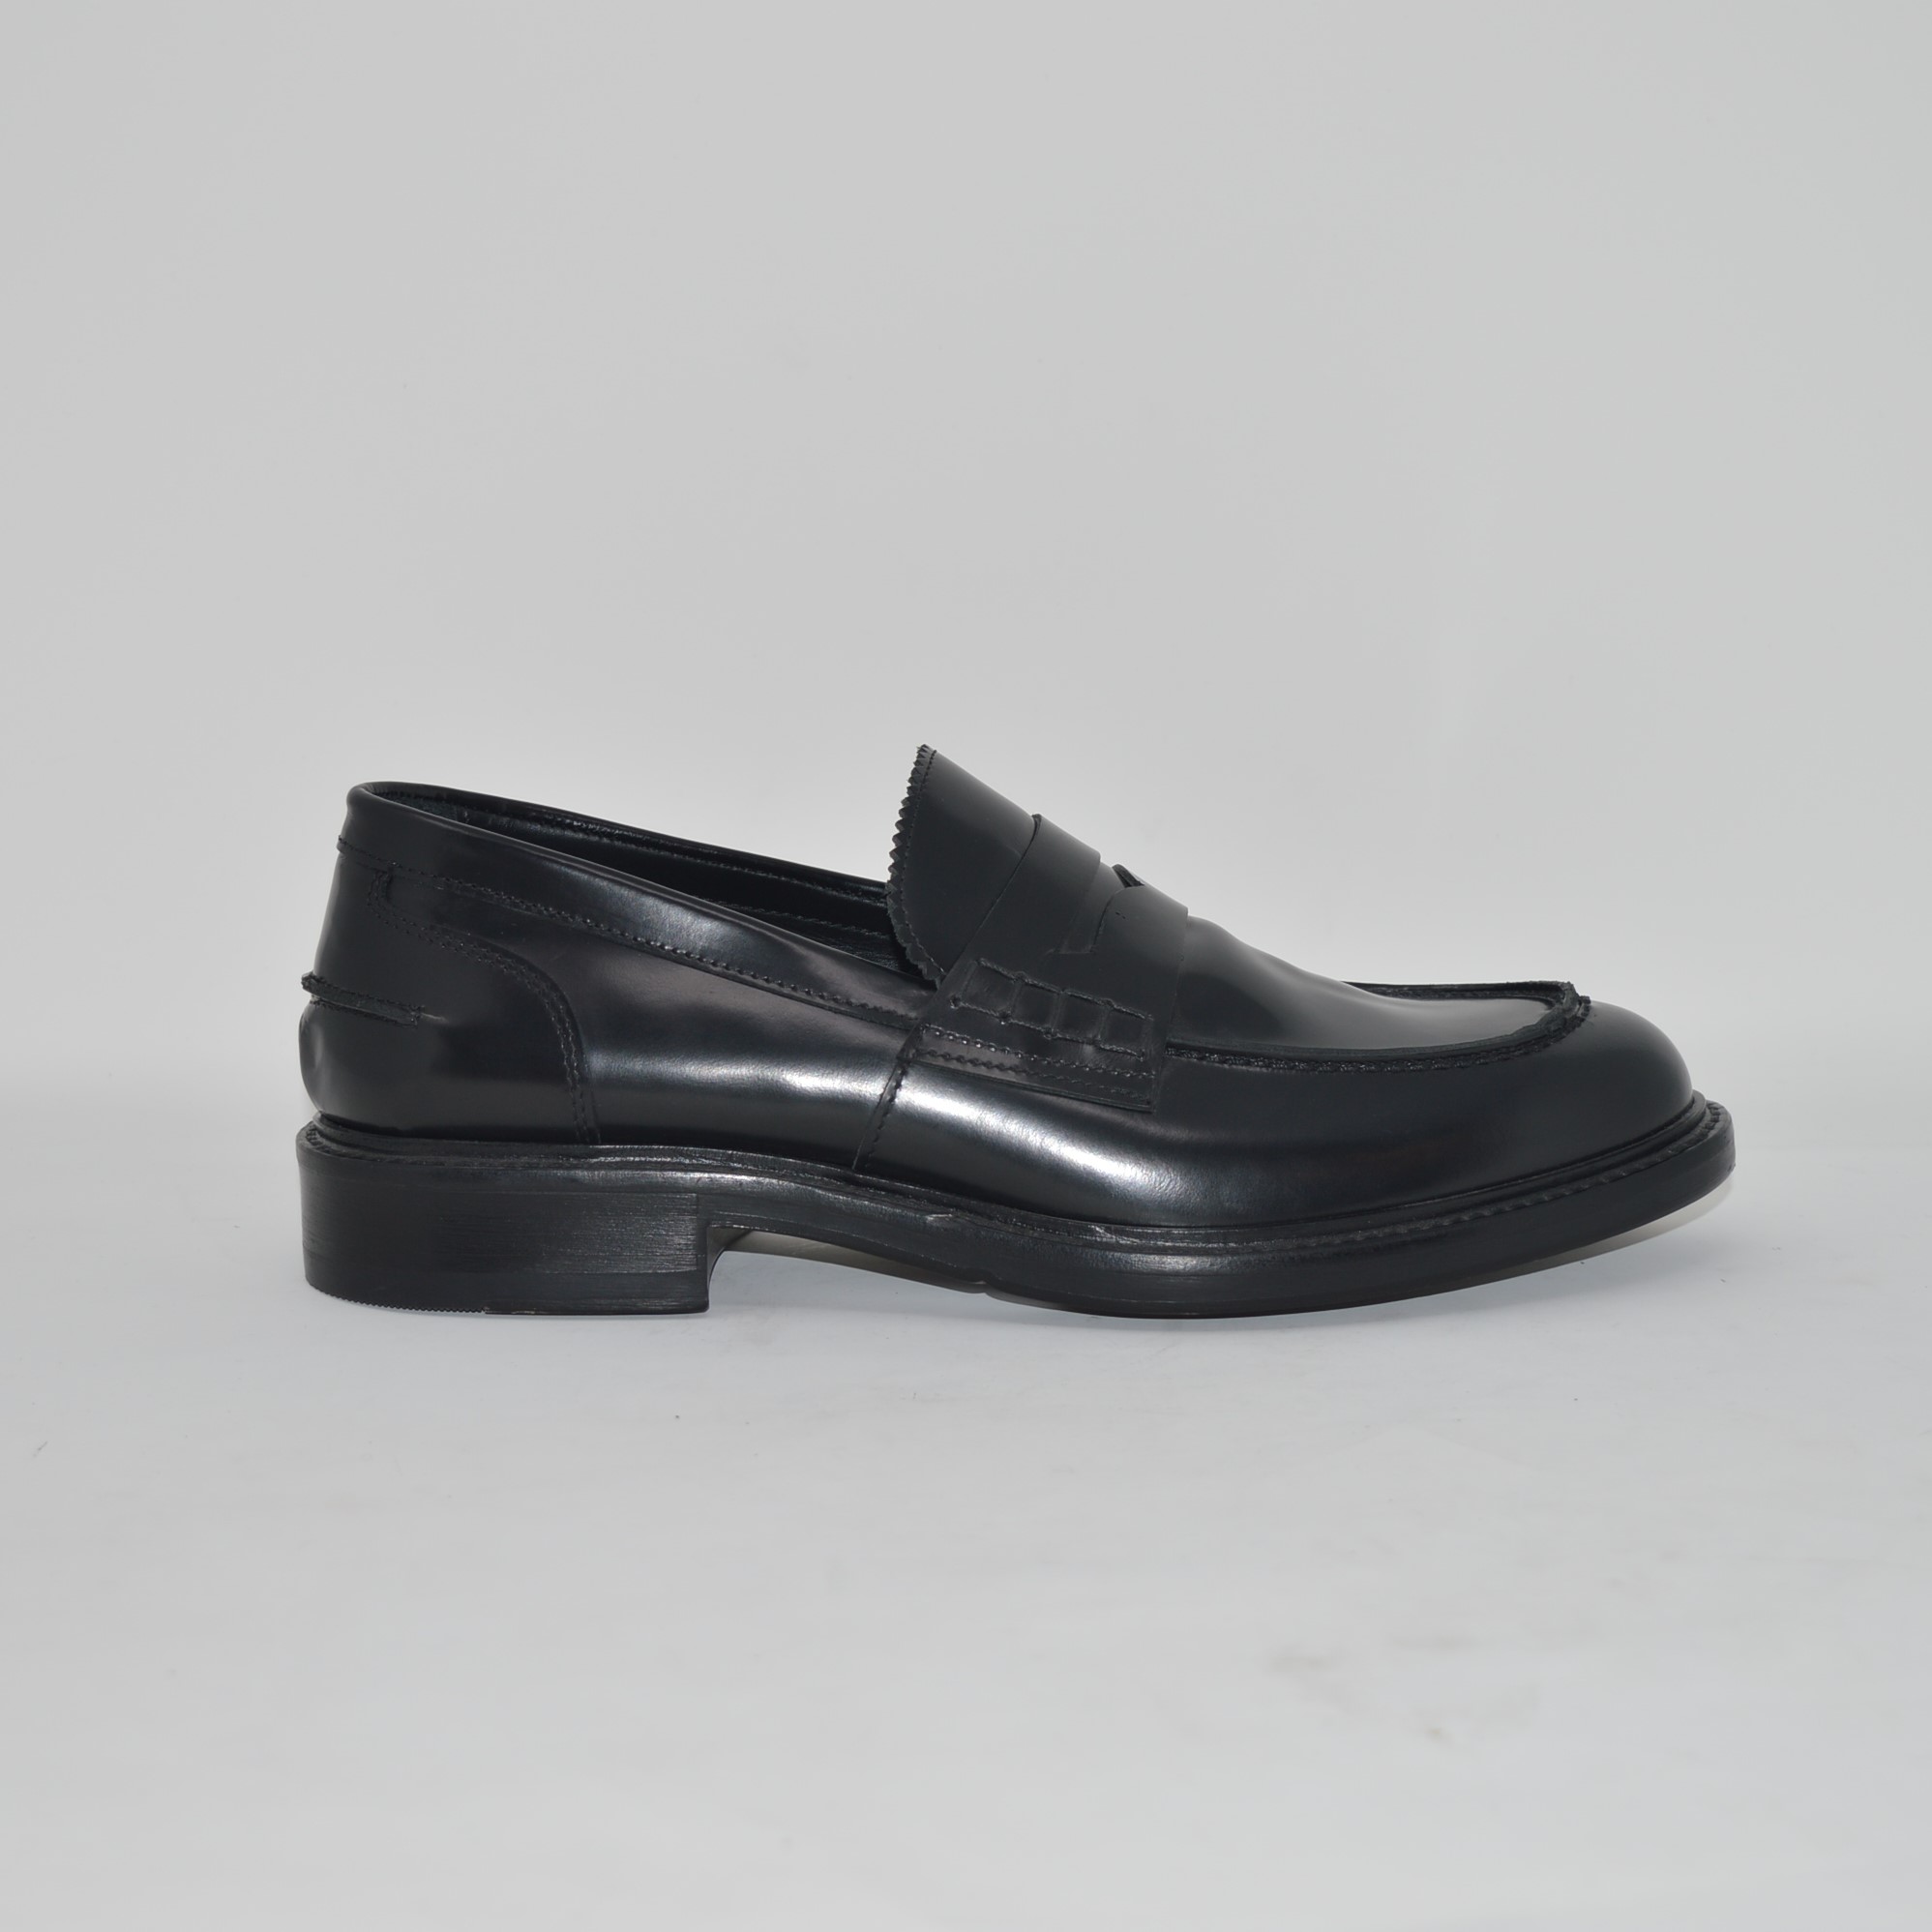 Loafer aus schwarzem, abrasivem Kalbsleder